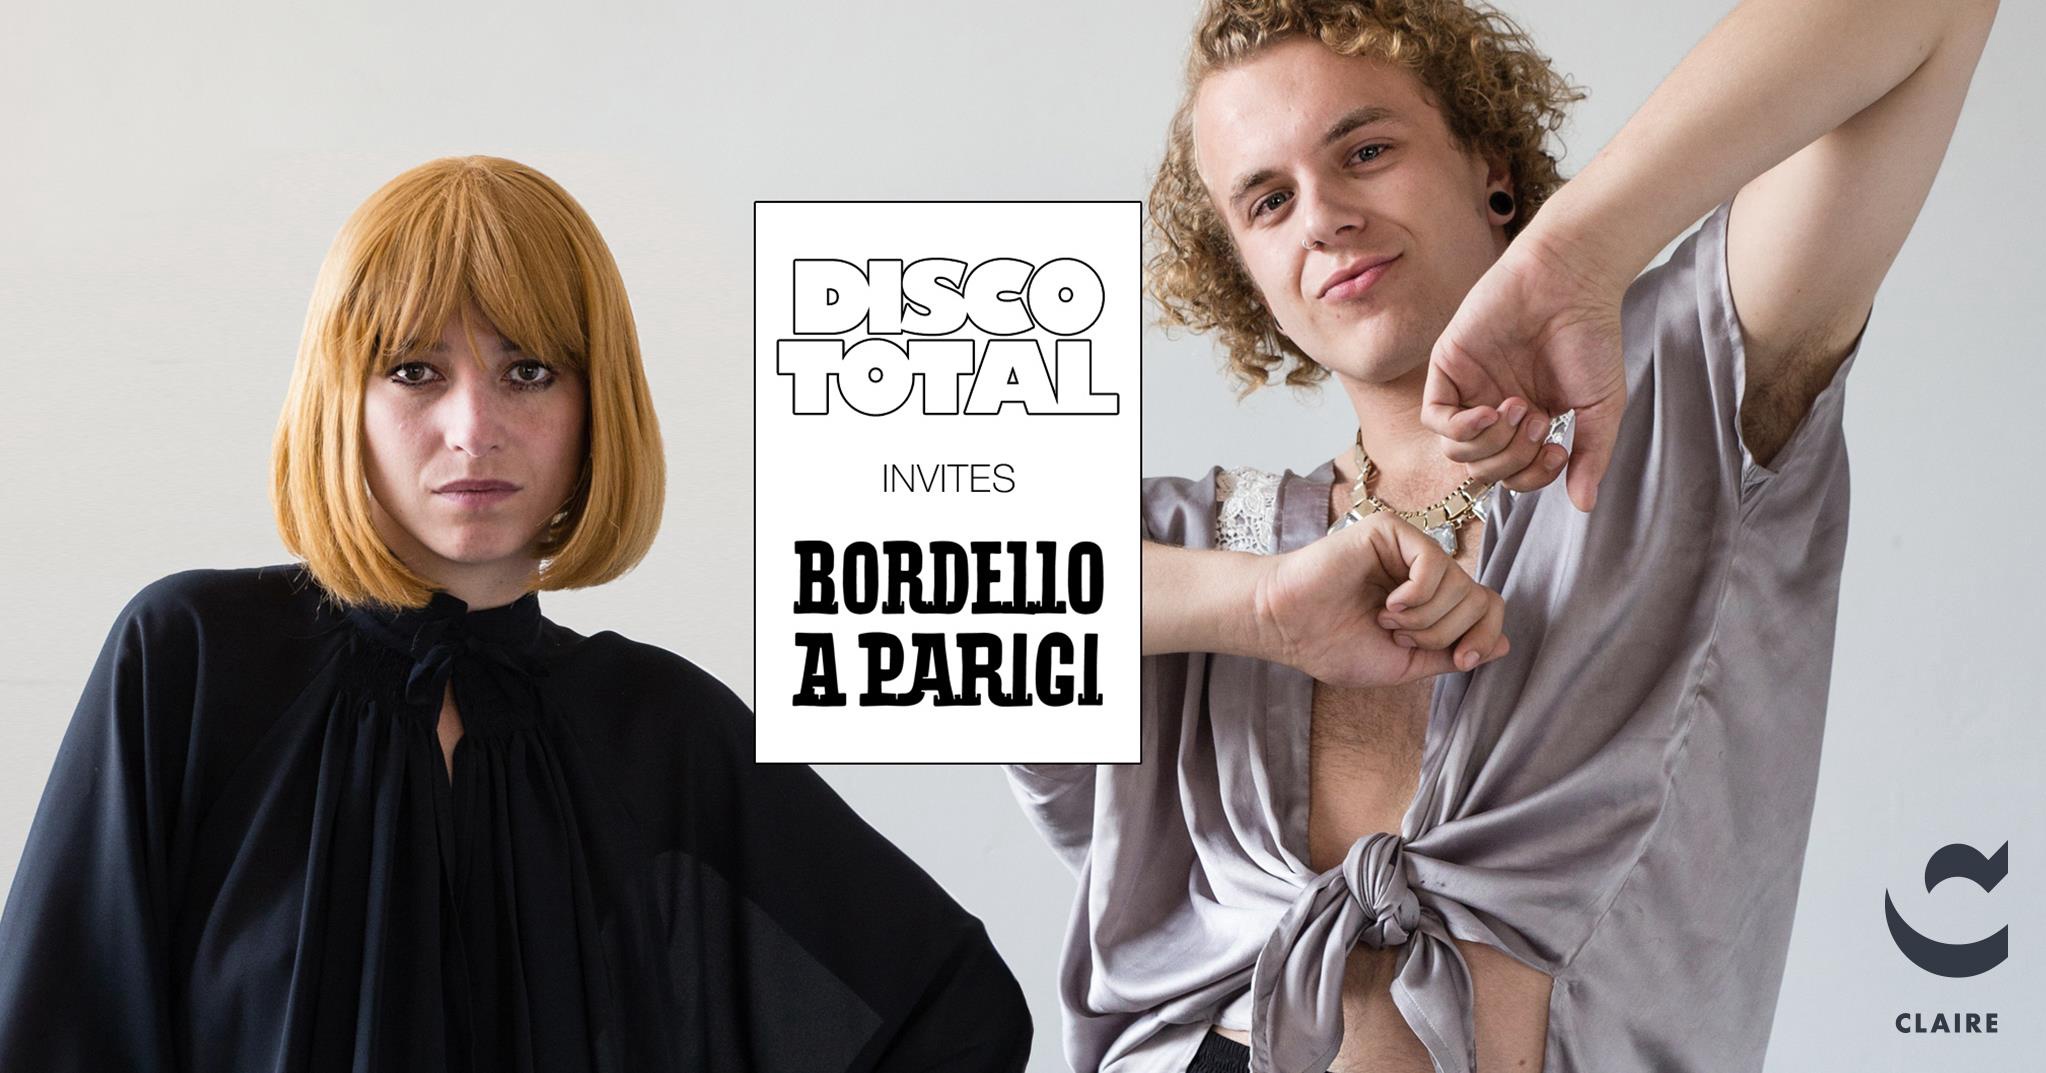 Disco Total invites Bordello A Parigi